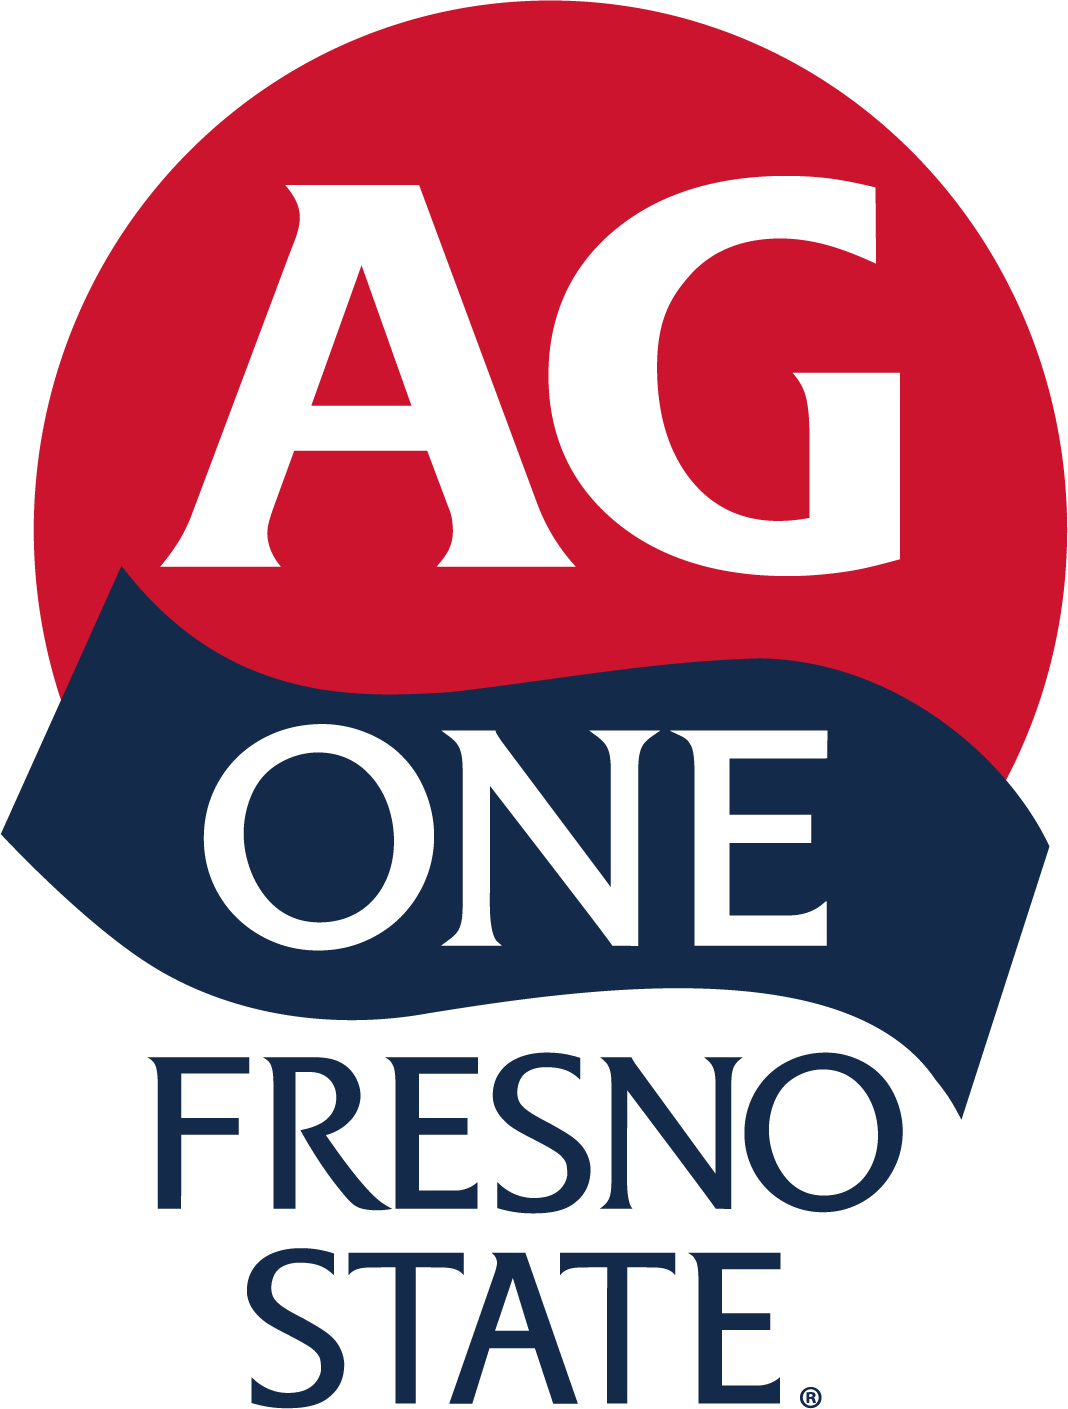 Ag One Logo